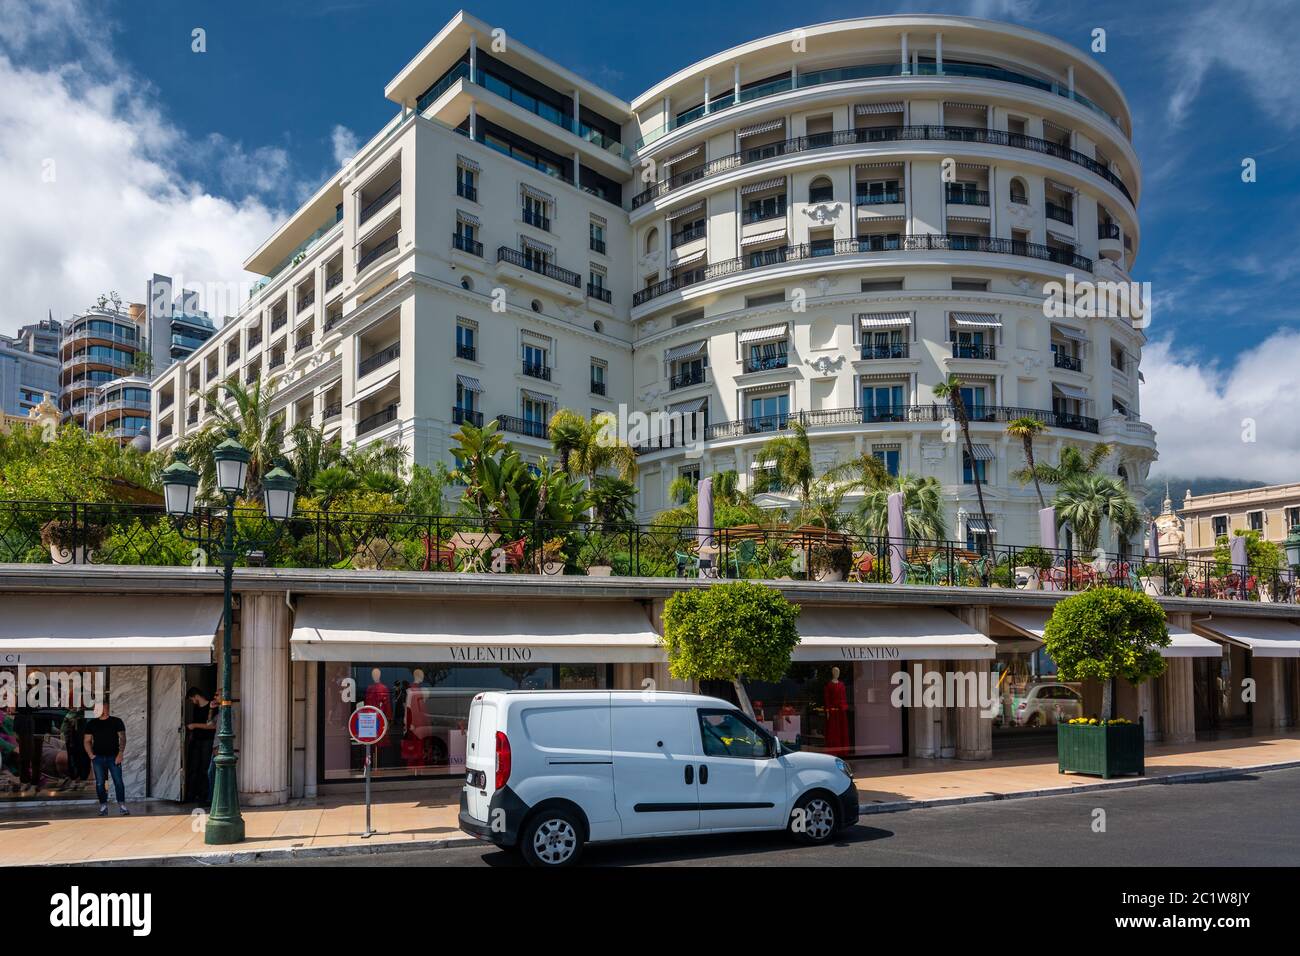 Monte Carlo, Monaco - 13 juin 2019 : Hôtel de Paris avec boutiques de luxe. Un des endroits préférés pour les riches. Banque D'Images